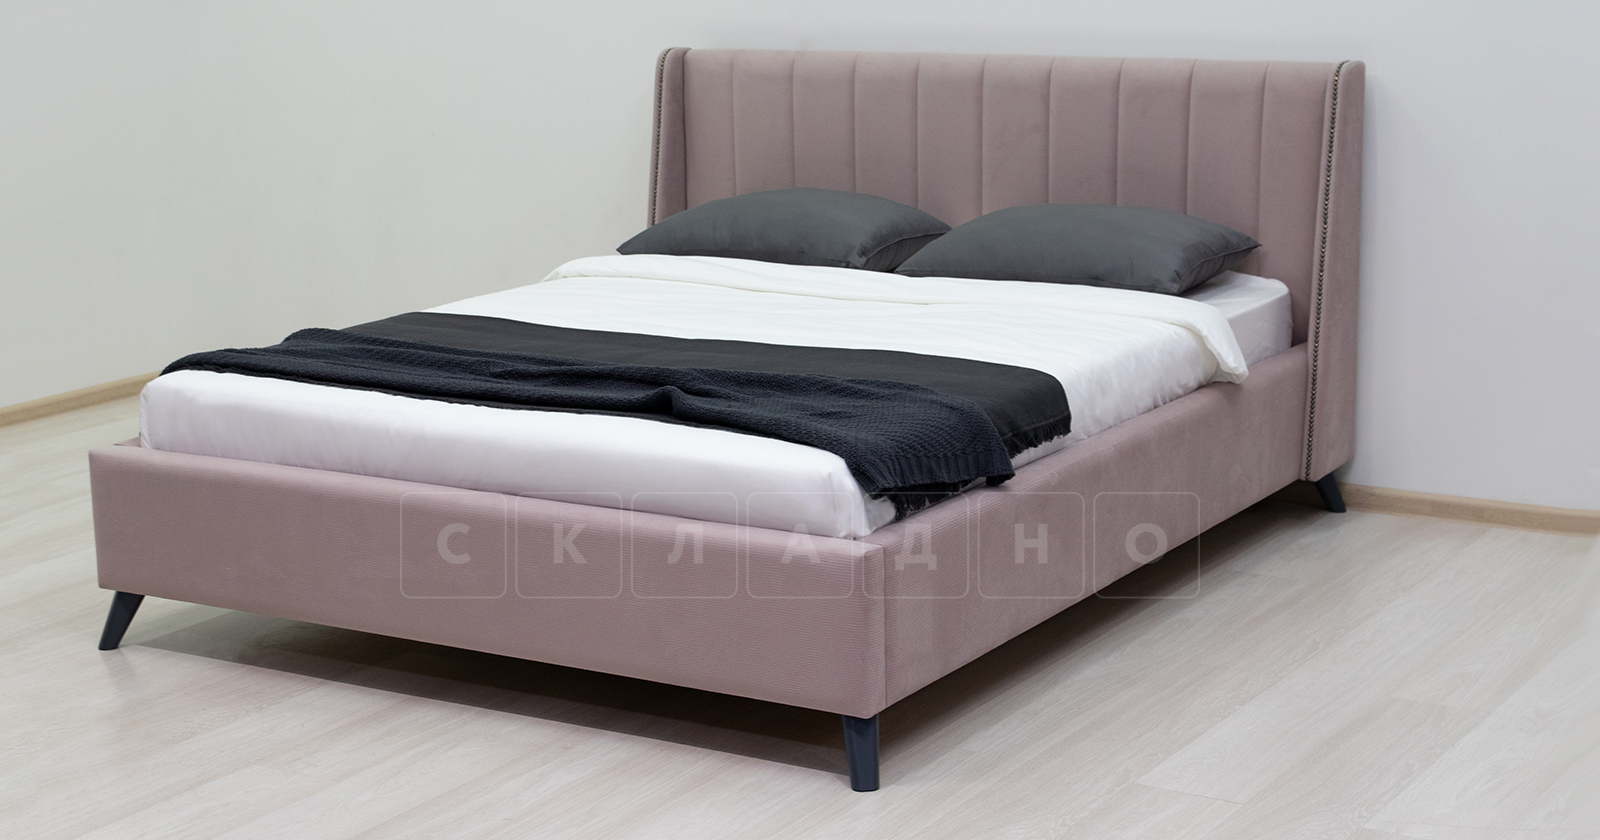 Мягкая кровать Мелисса 160 см велюр ява фото 5 | интернет-магазин Складно